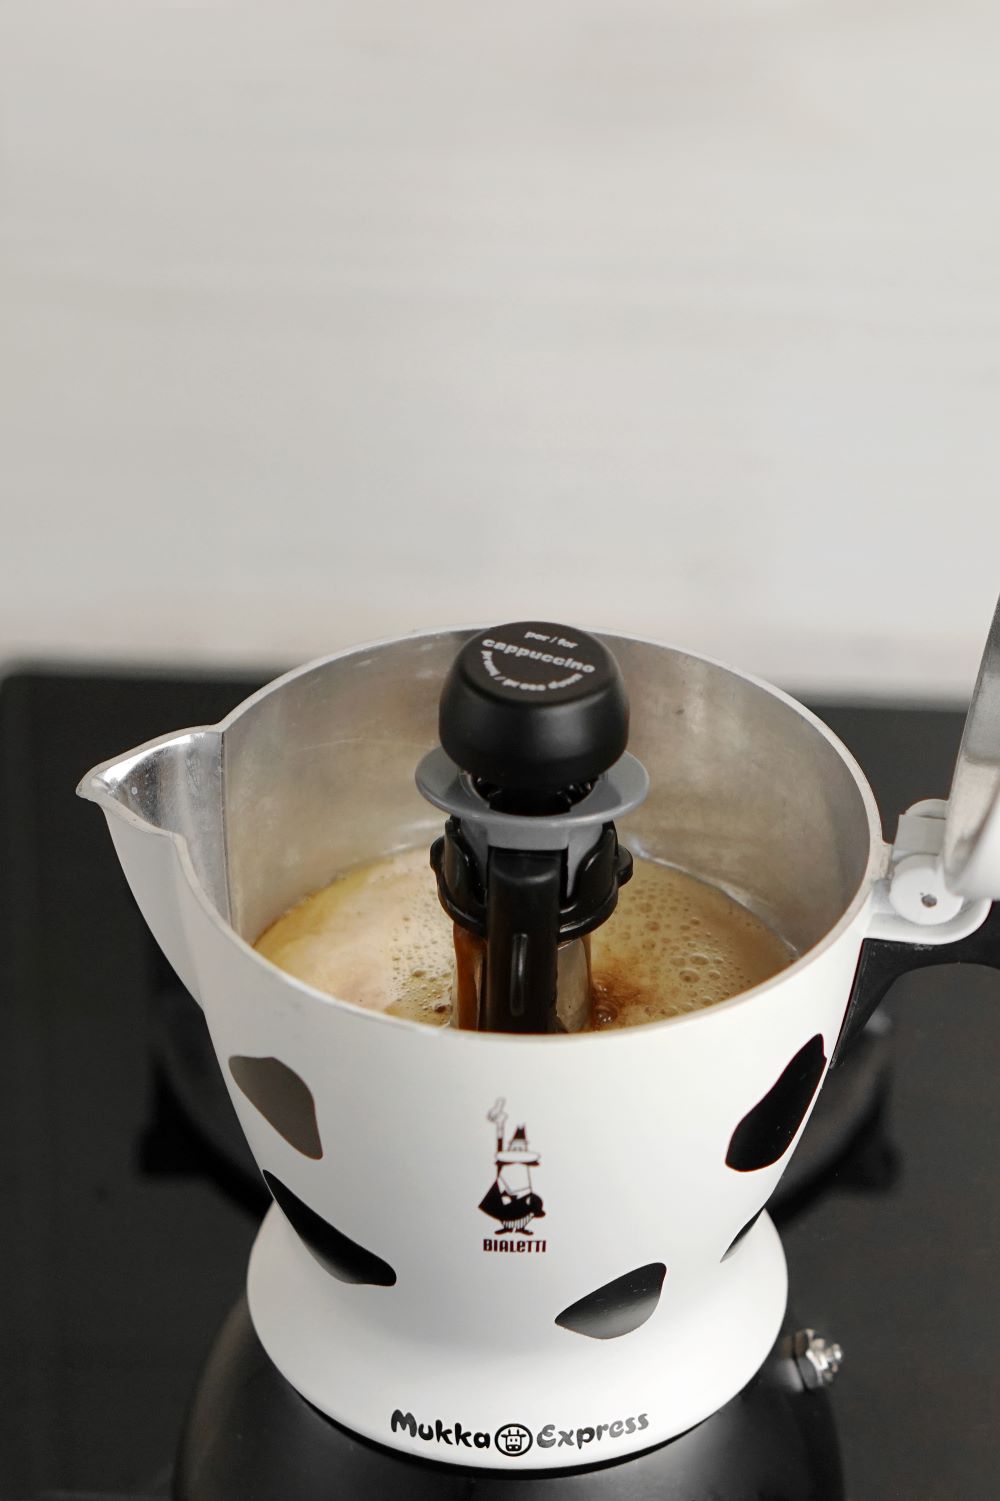 proces przygotowania kawy w Bialetti Mukka